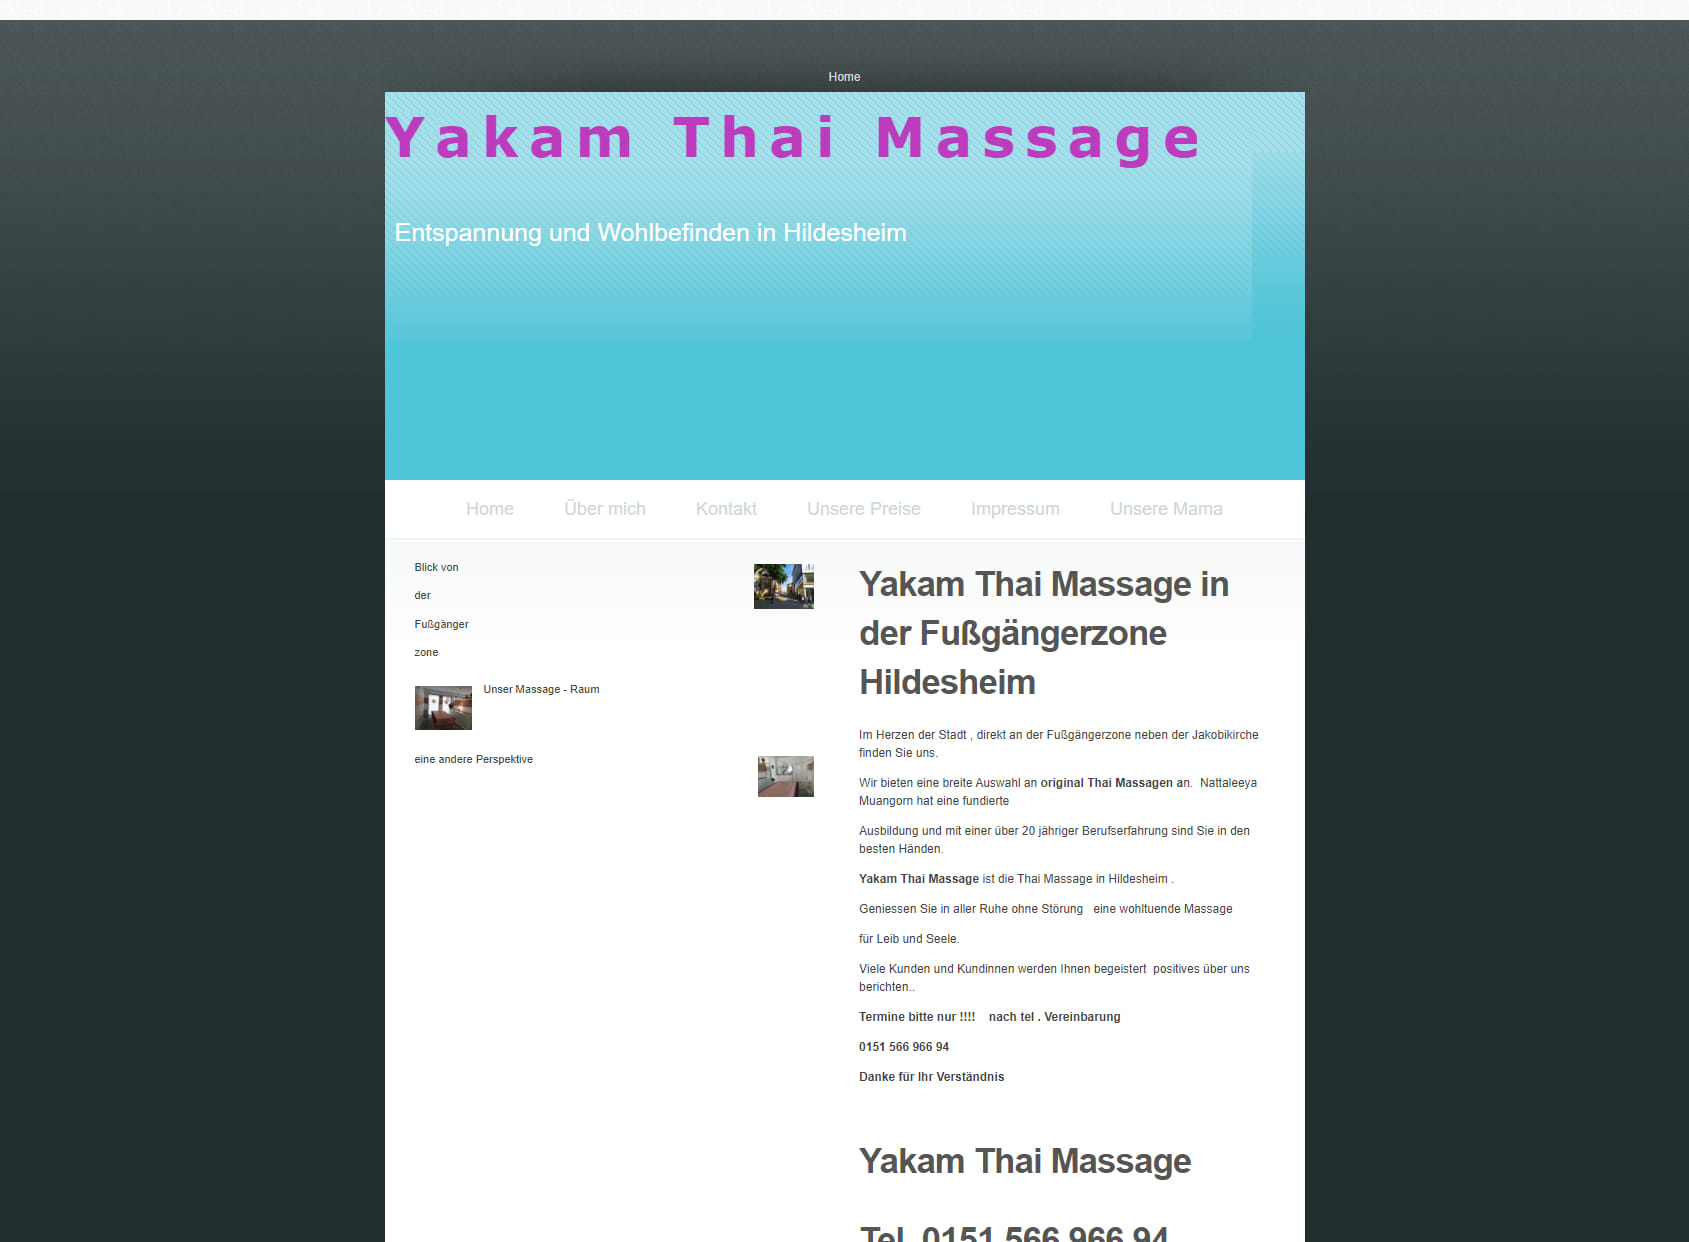 Yakam Thai Massage